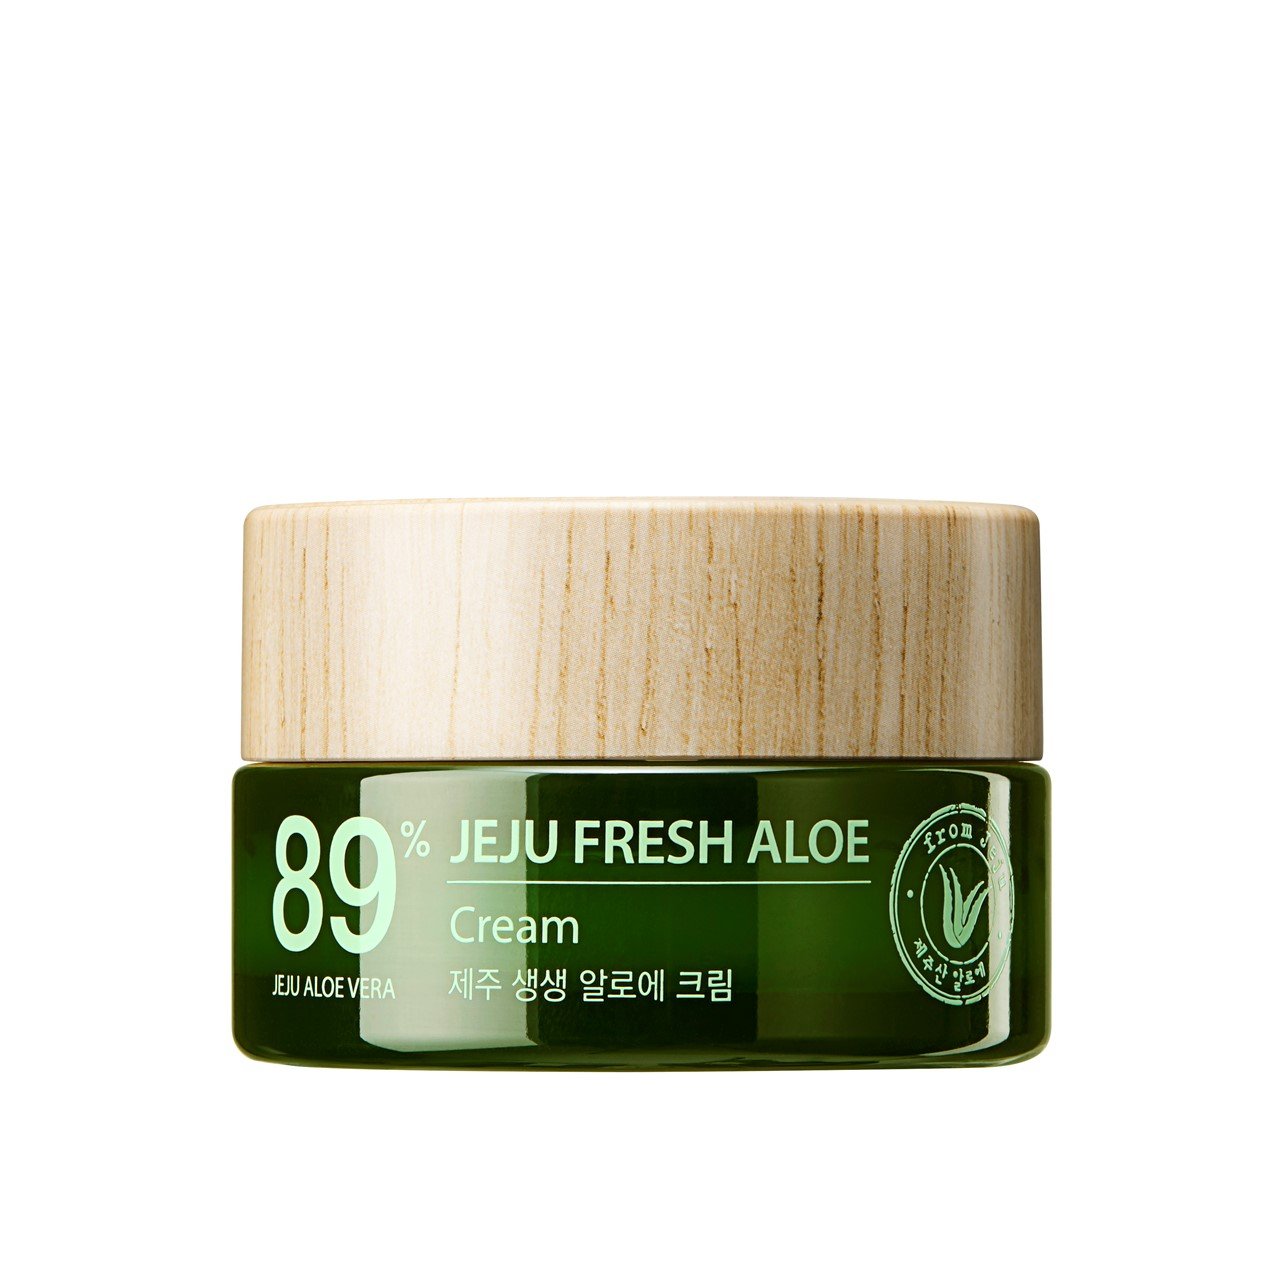 The Saem Jeju Fresh Aloe Cream 89% 50ml